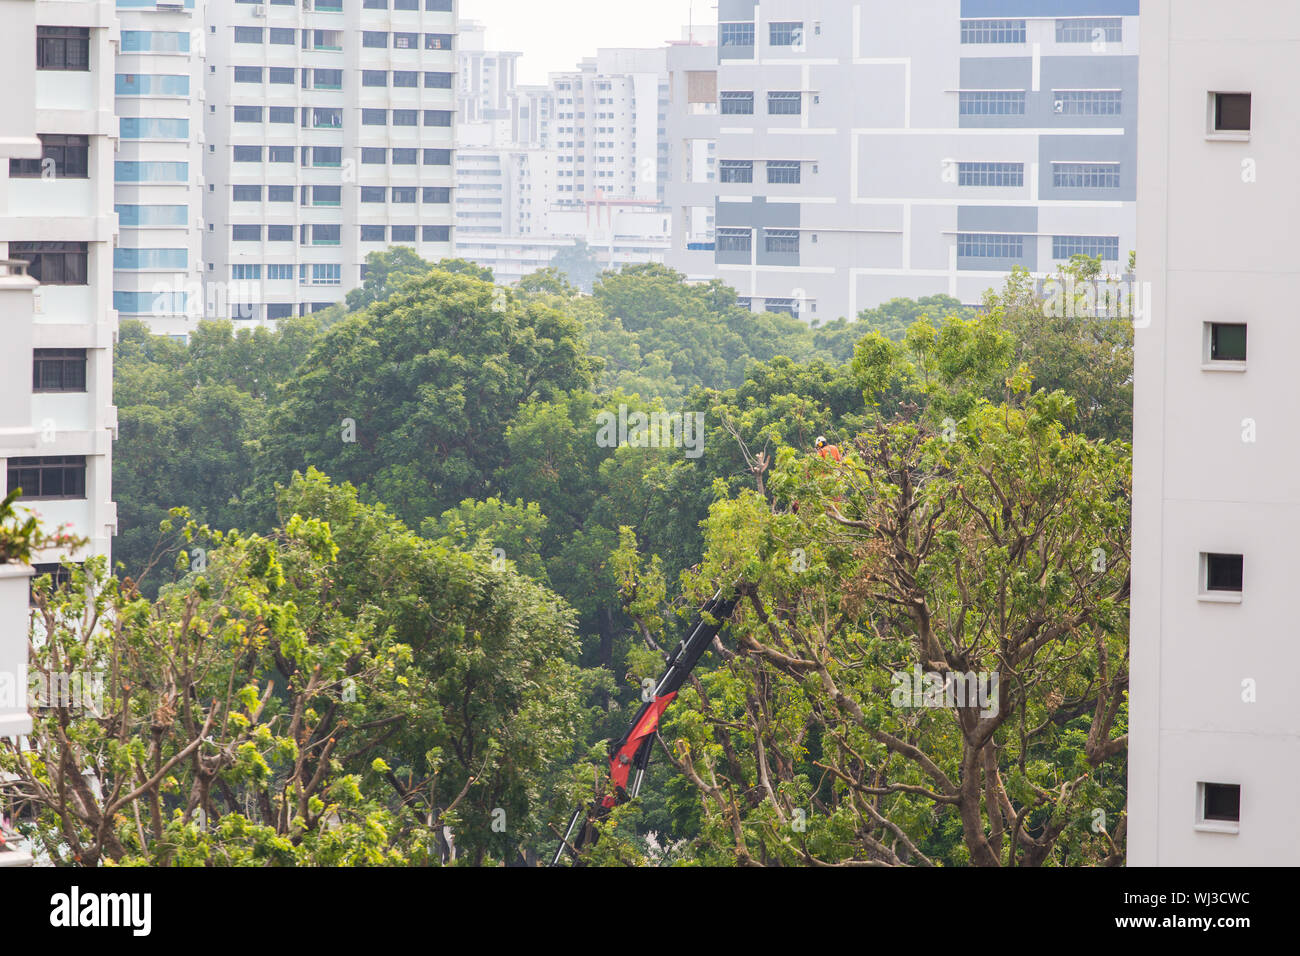 Servicio profesional de poda de árboles, el trabajador se levanta en lo alto de la elevación del auge para cortar las ramas largas. Singapur. Foto de stock